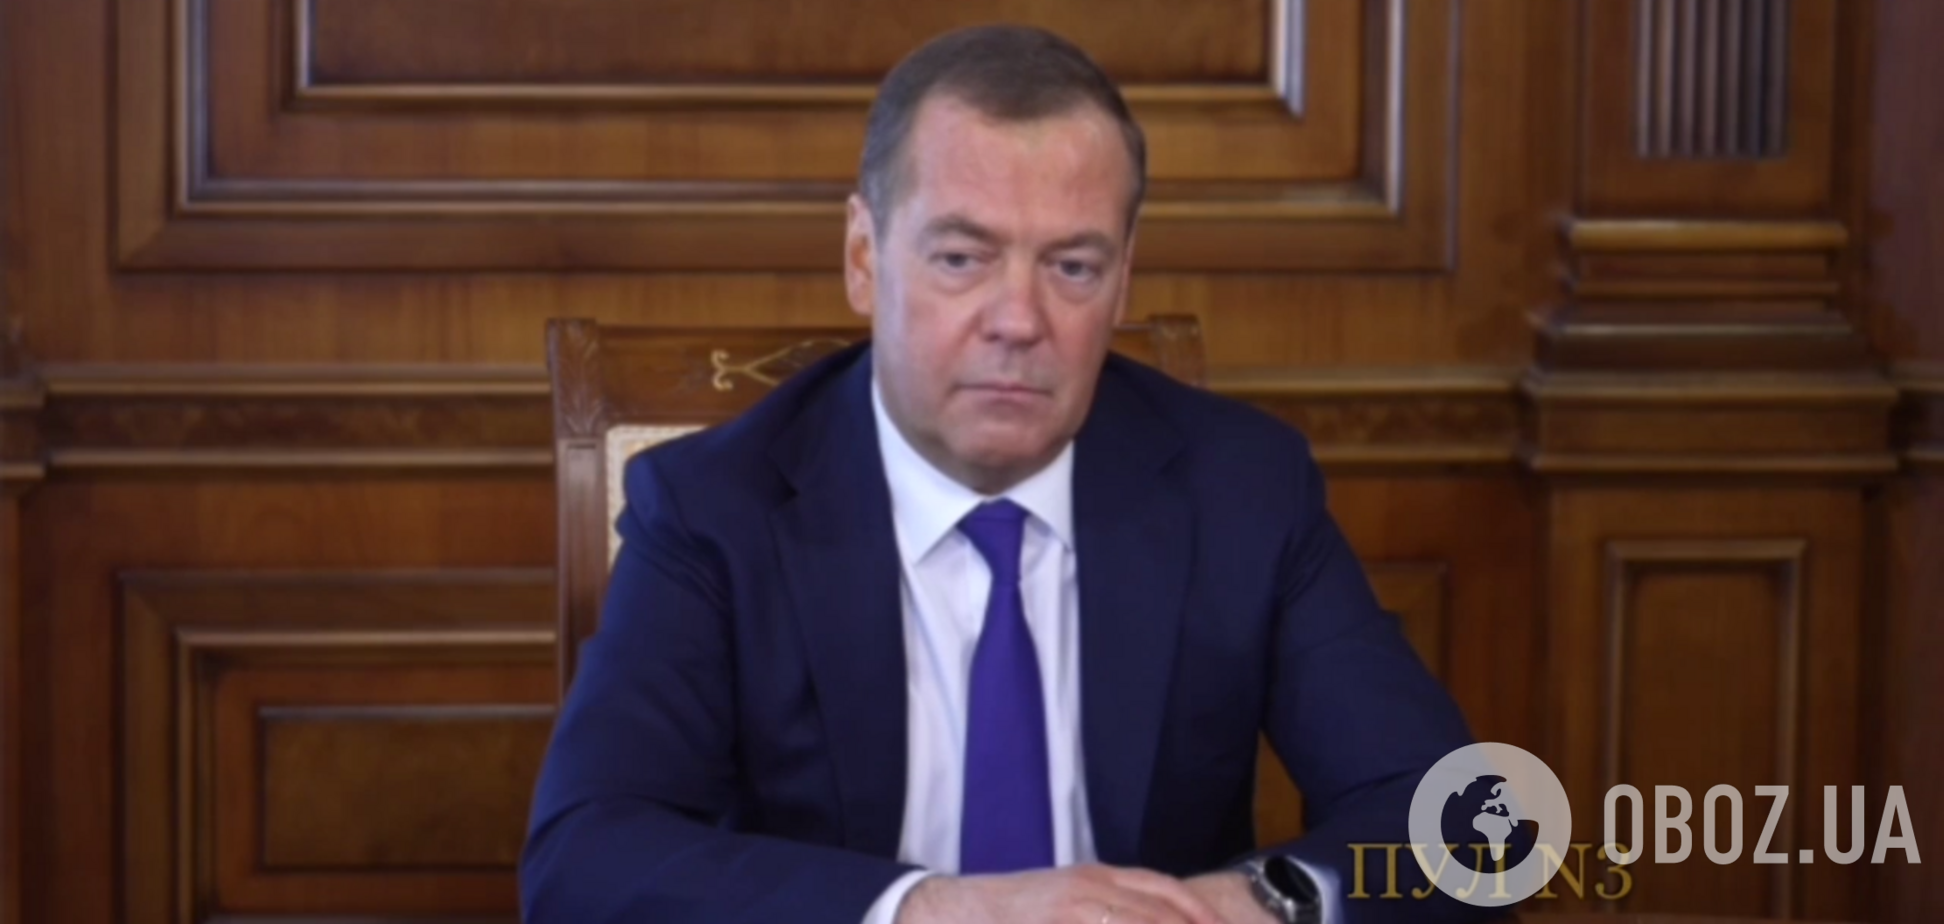 Дмитрий Медведев в интервью росСМИ